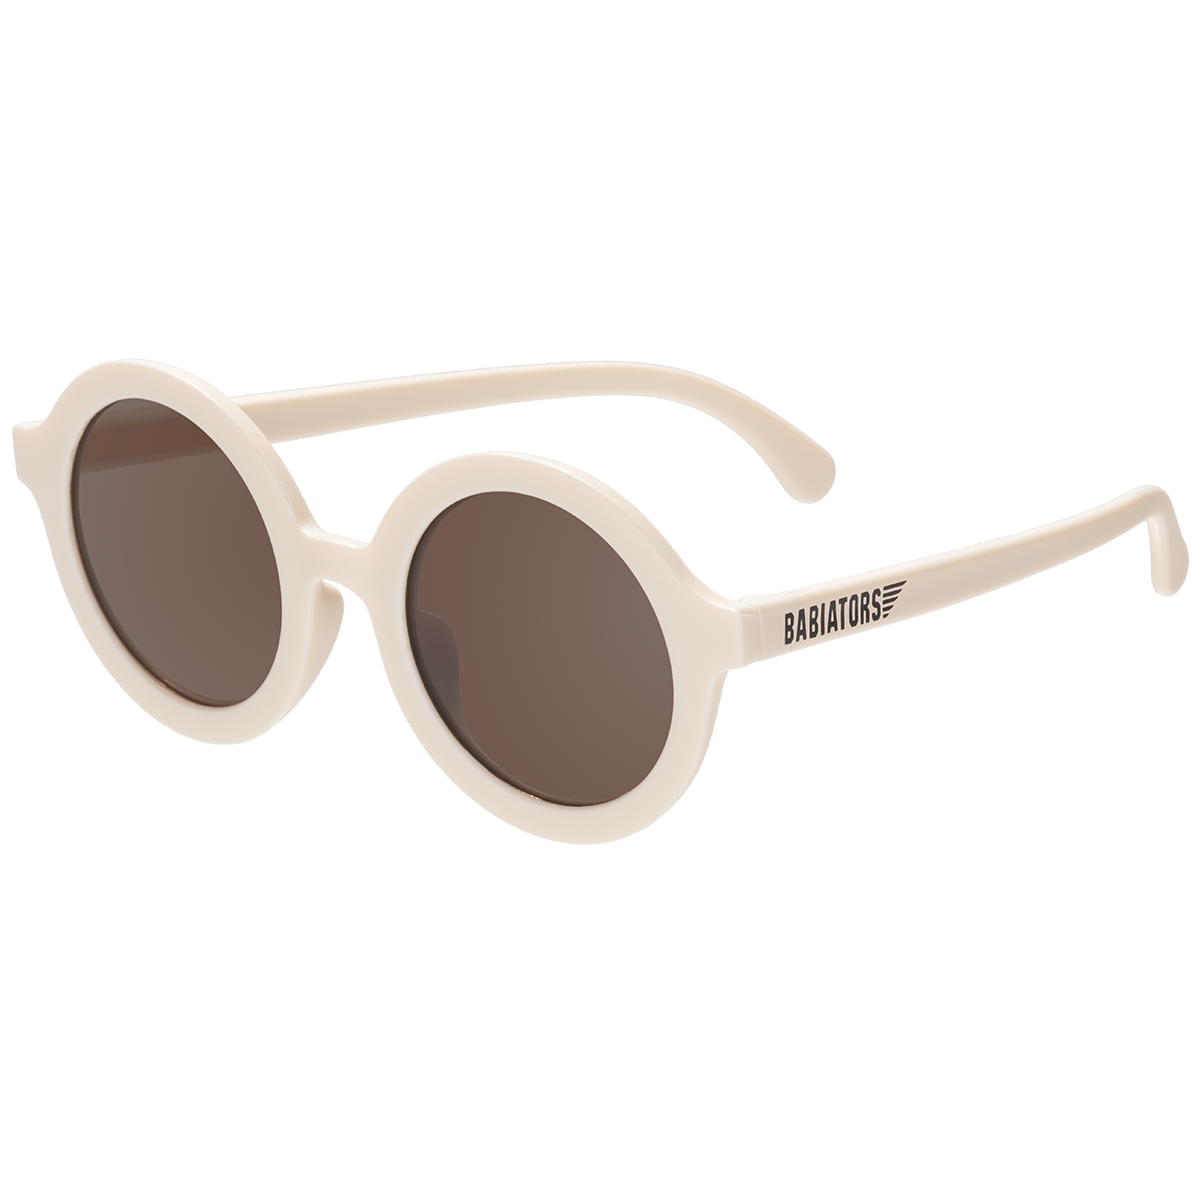 Euro Round Sunglasses- Sweet Cream